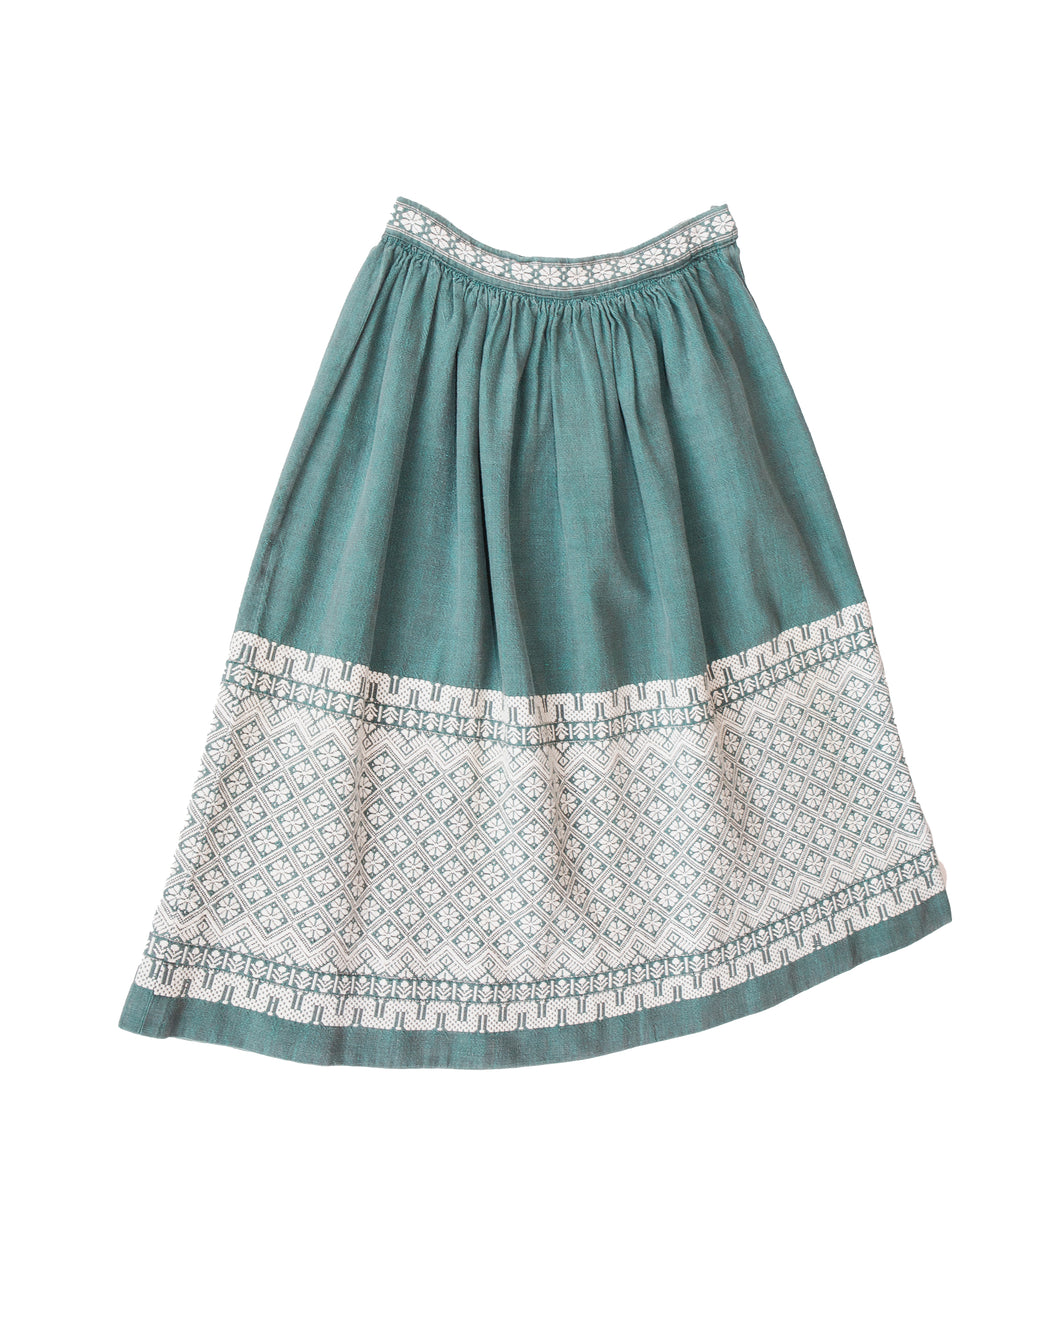 1950's Woven Skirt